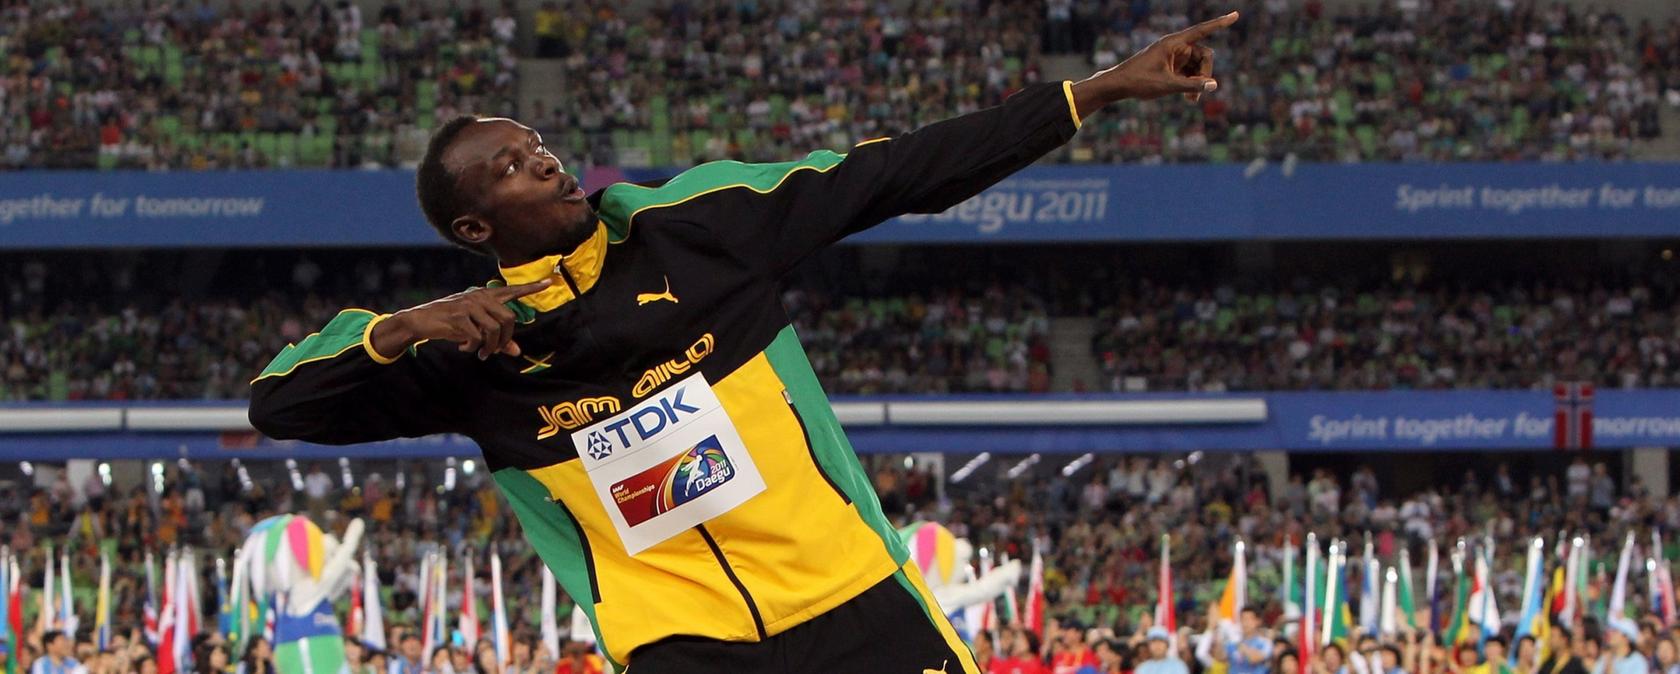 Leichtathletik-Gigant Usain Bolt hat seinen Vertrag mit Puma verlängert.